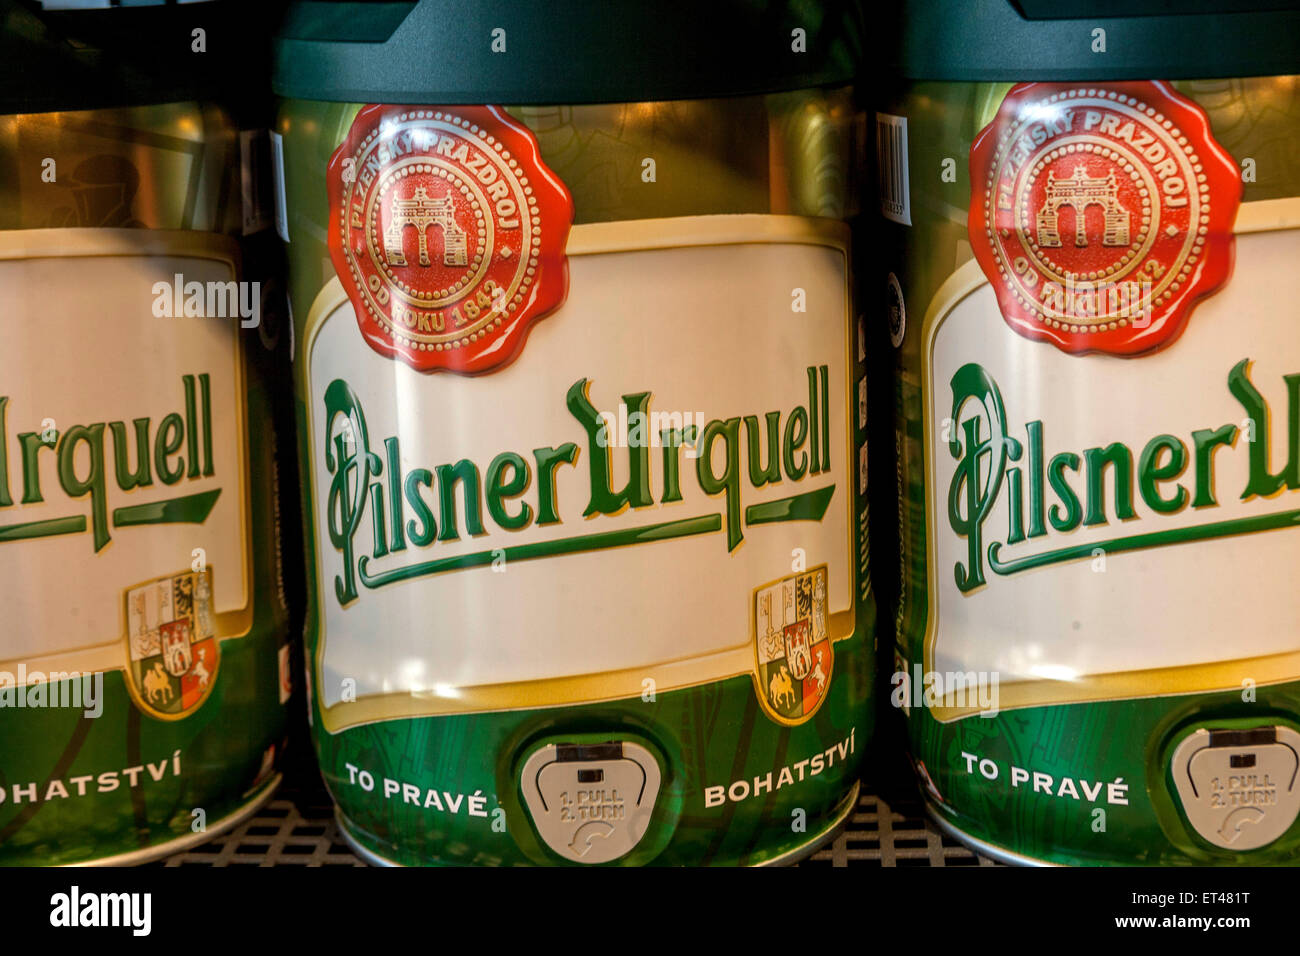 Small five-liter keg of beer brand Pilsner Urquell. Czech Republic Stock Photo